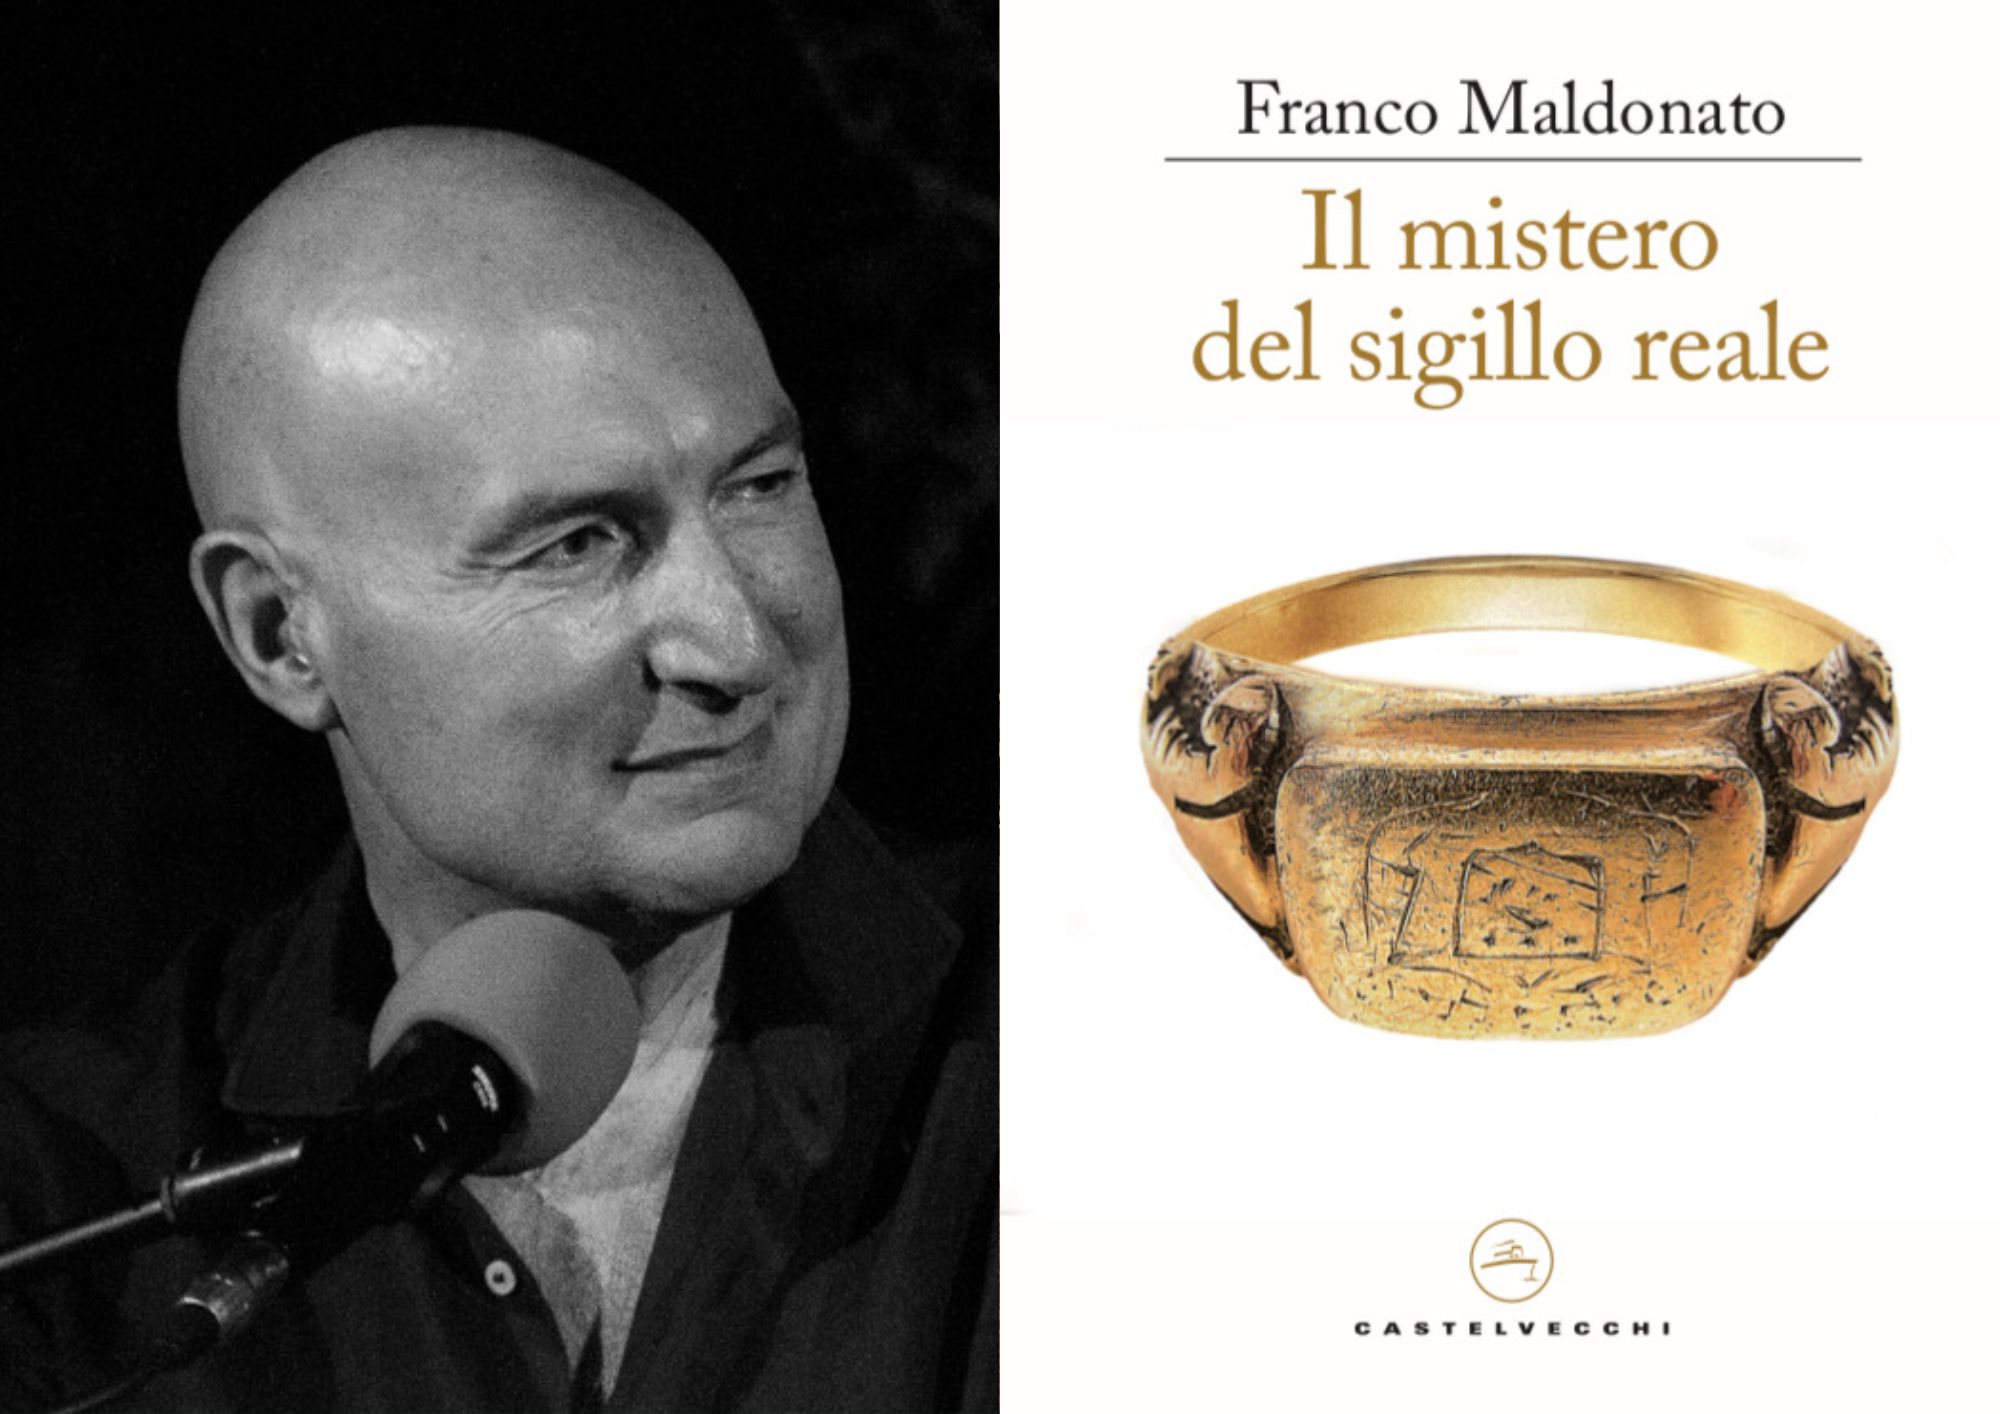 «Il mistero del sigillo reale», a Salerno Letteratura la prima del libro di Franco Maldonato